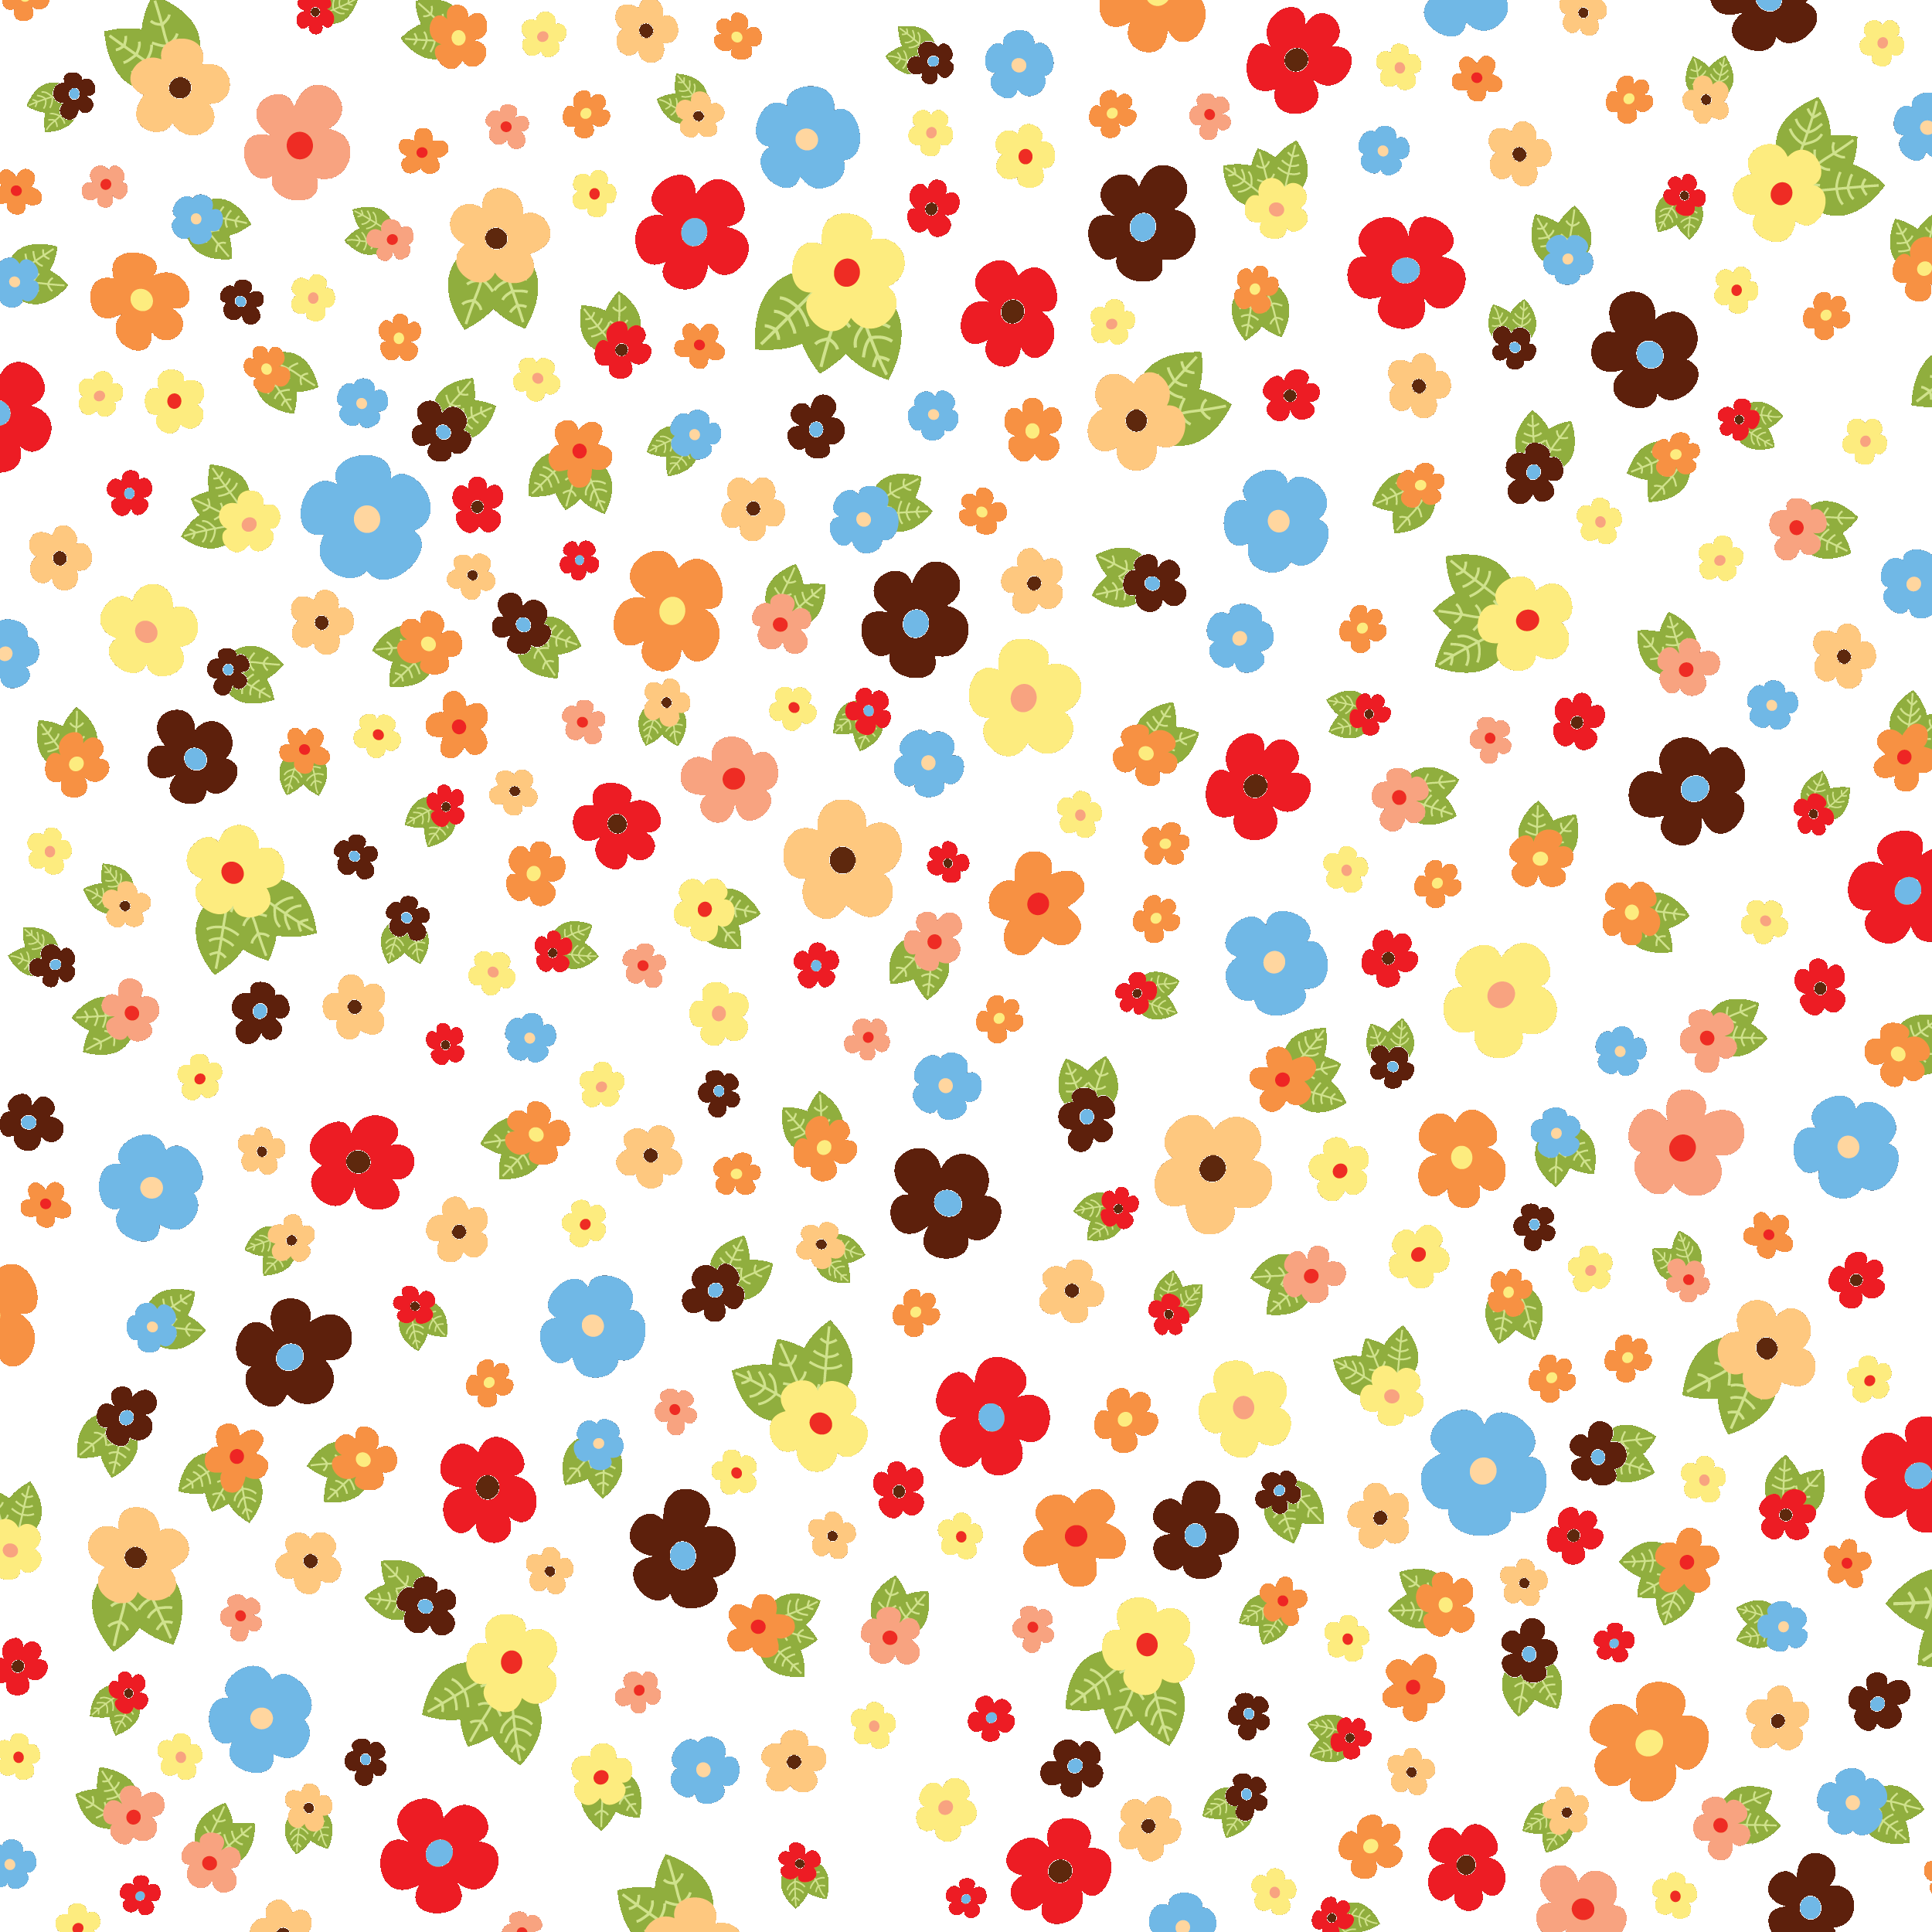 壁紙 背景イラスト 花の模様 柄 パターン No 078 カラフル 透明 たくさん